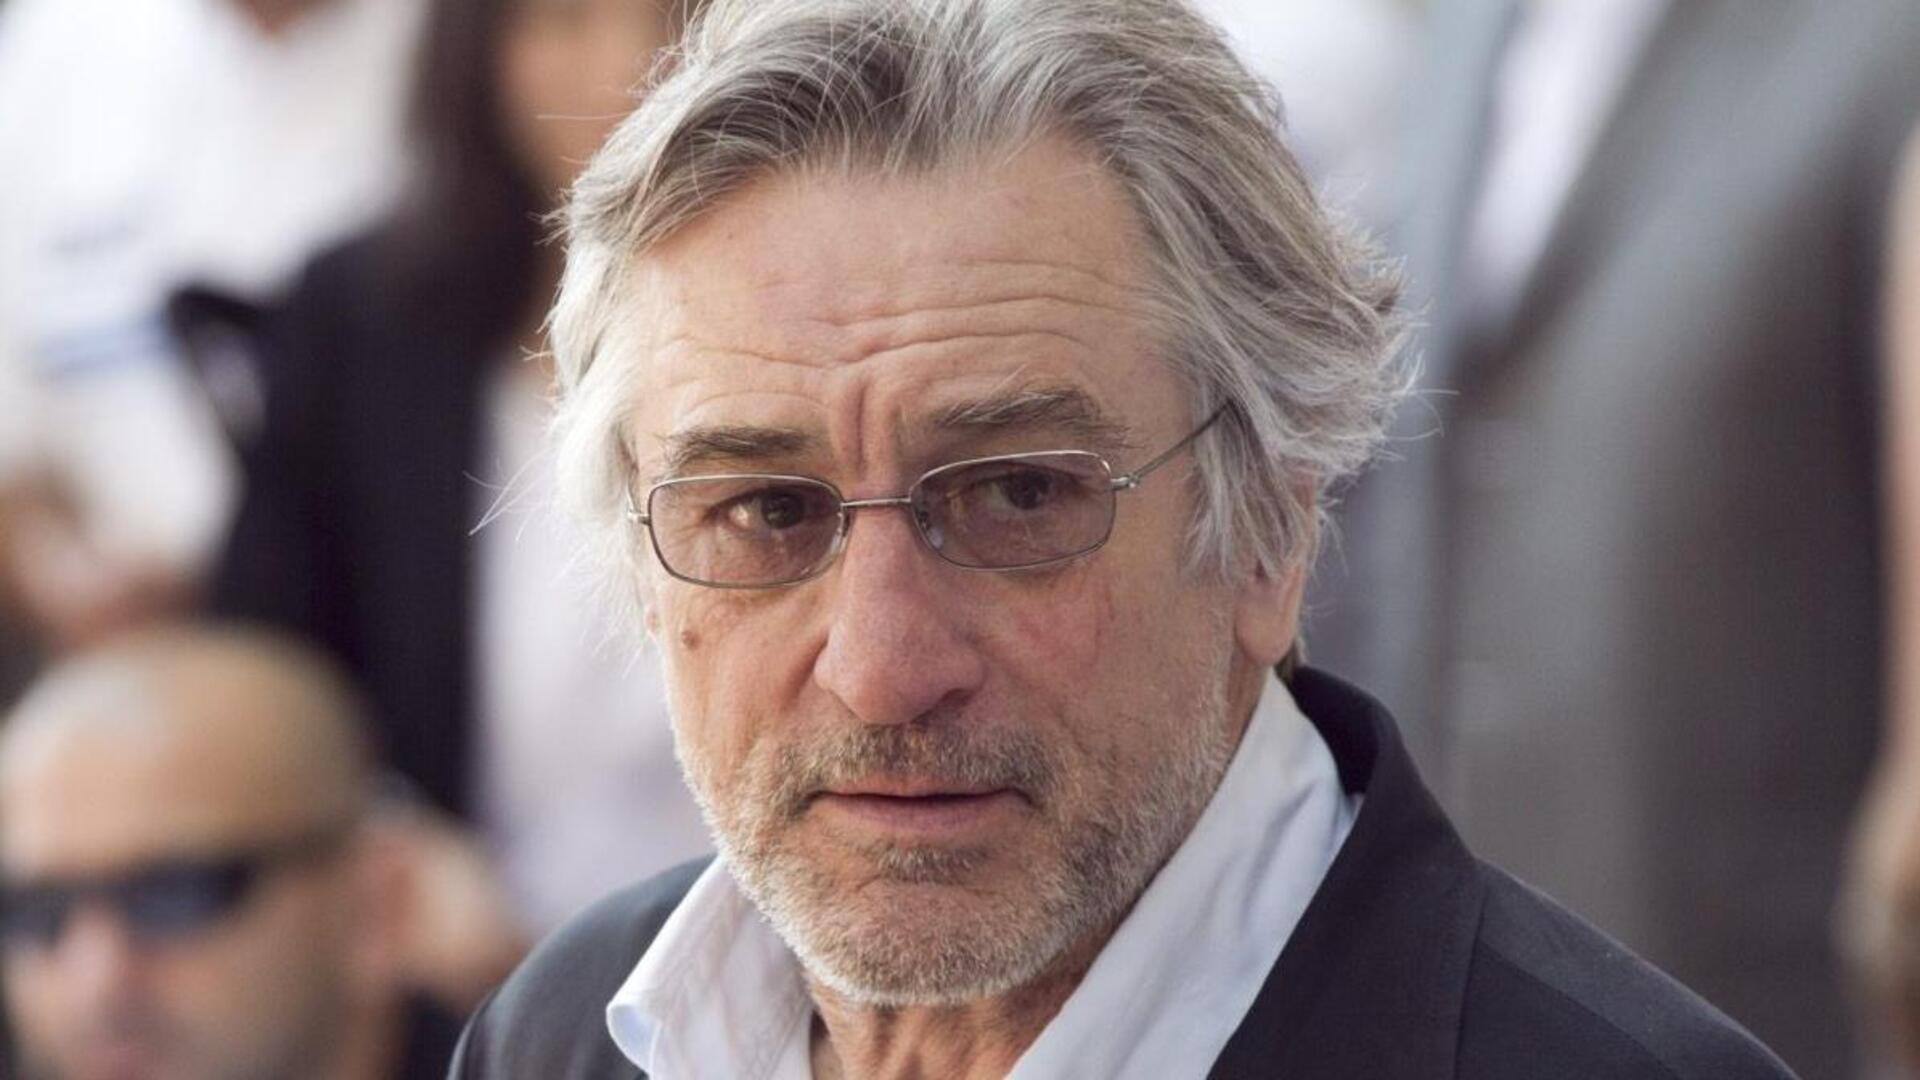 Robert De Niro's grandson passes away at 19